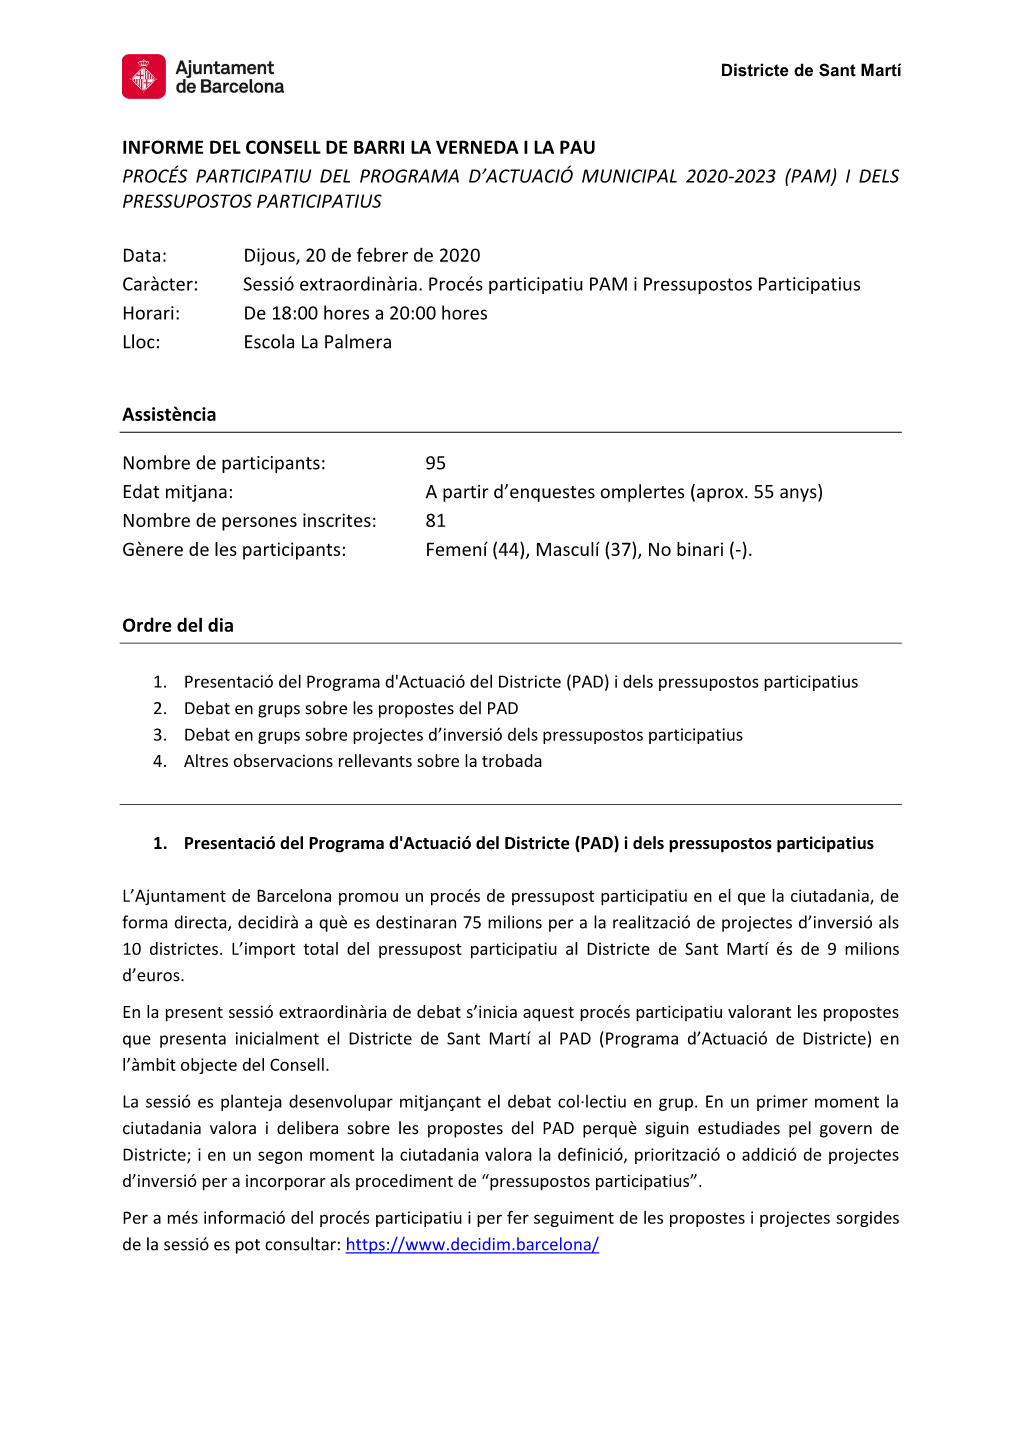 Informe Del Consell De Barri La Verneda I La Pau Procés Participatiu Del Programa D’Actuació Municipal 2020-2023 (Pam) I Dels Pressupostos Participatius